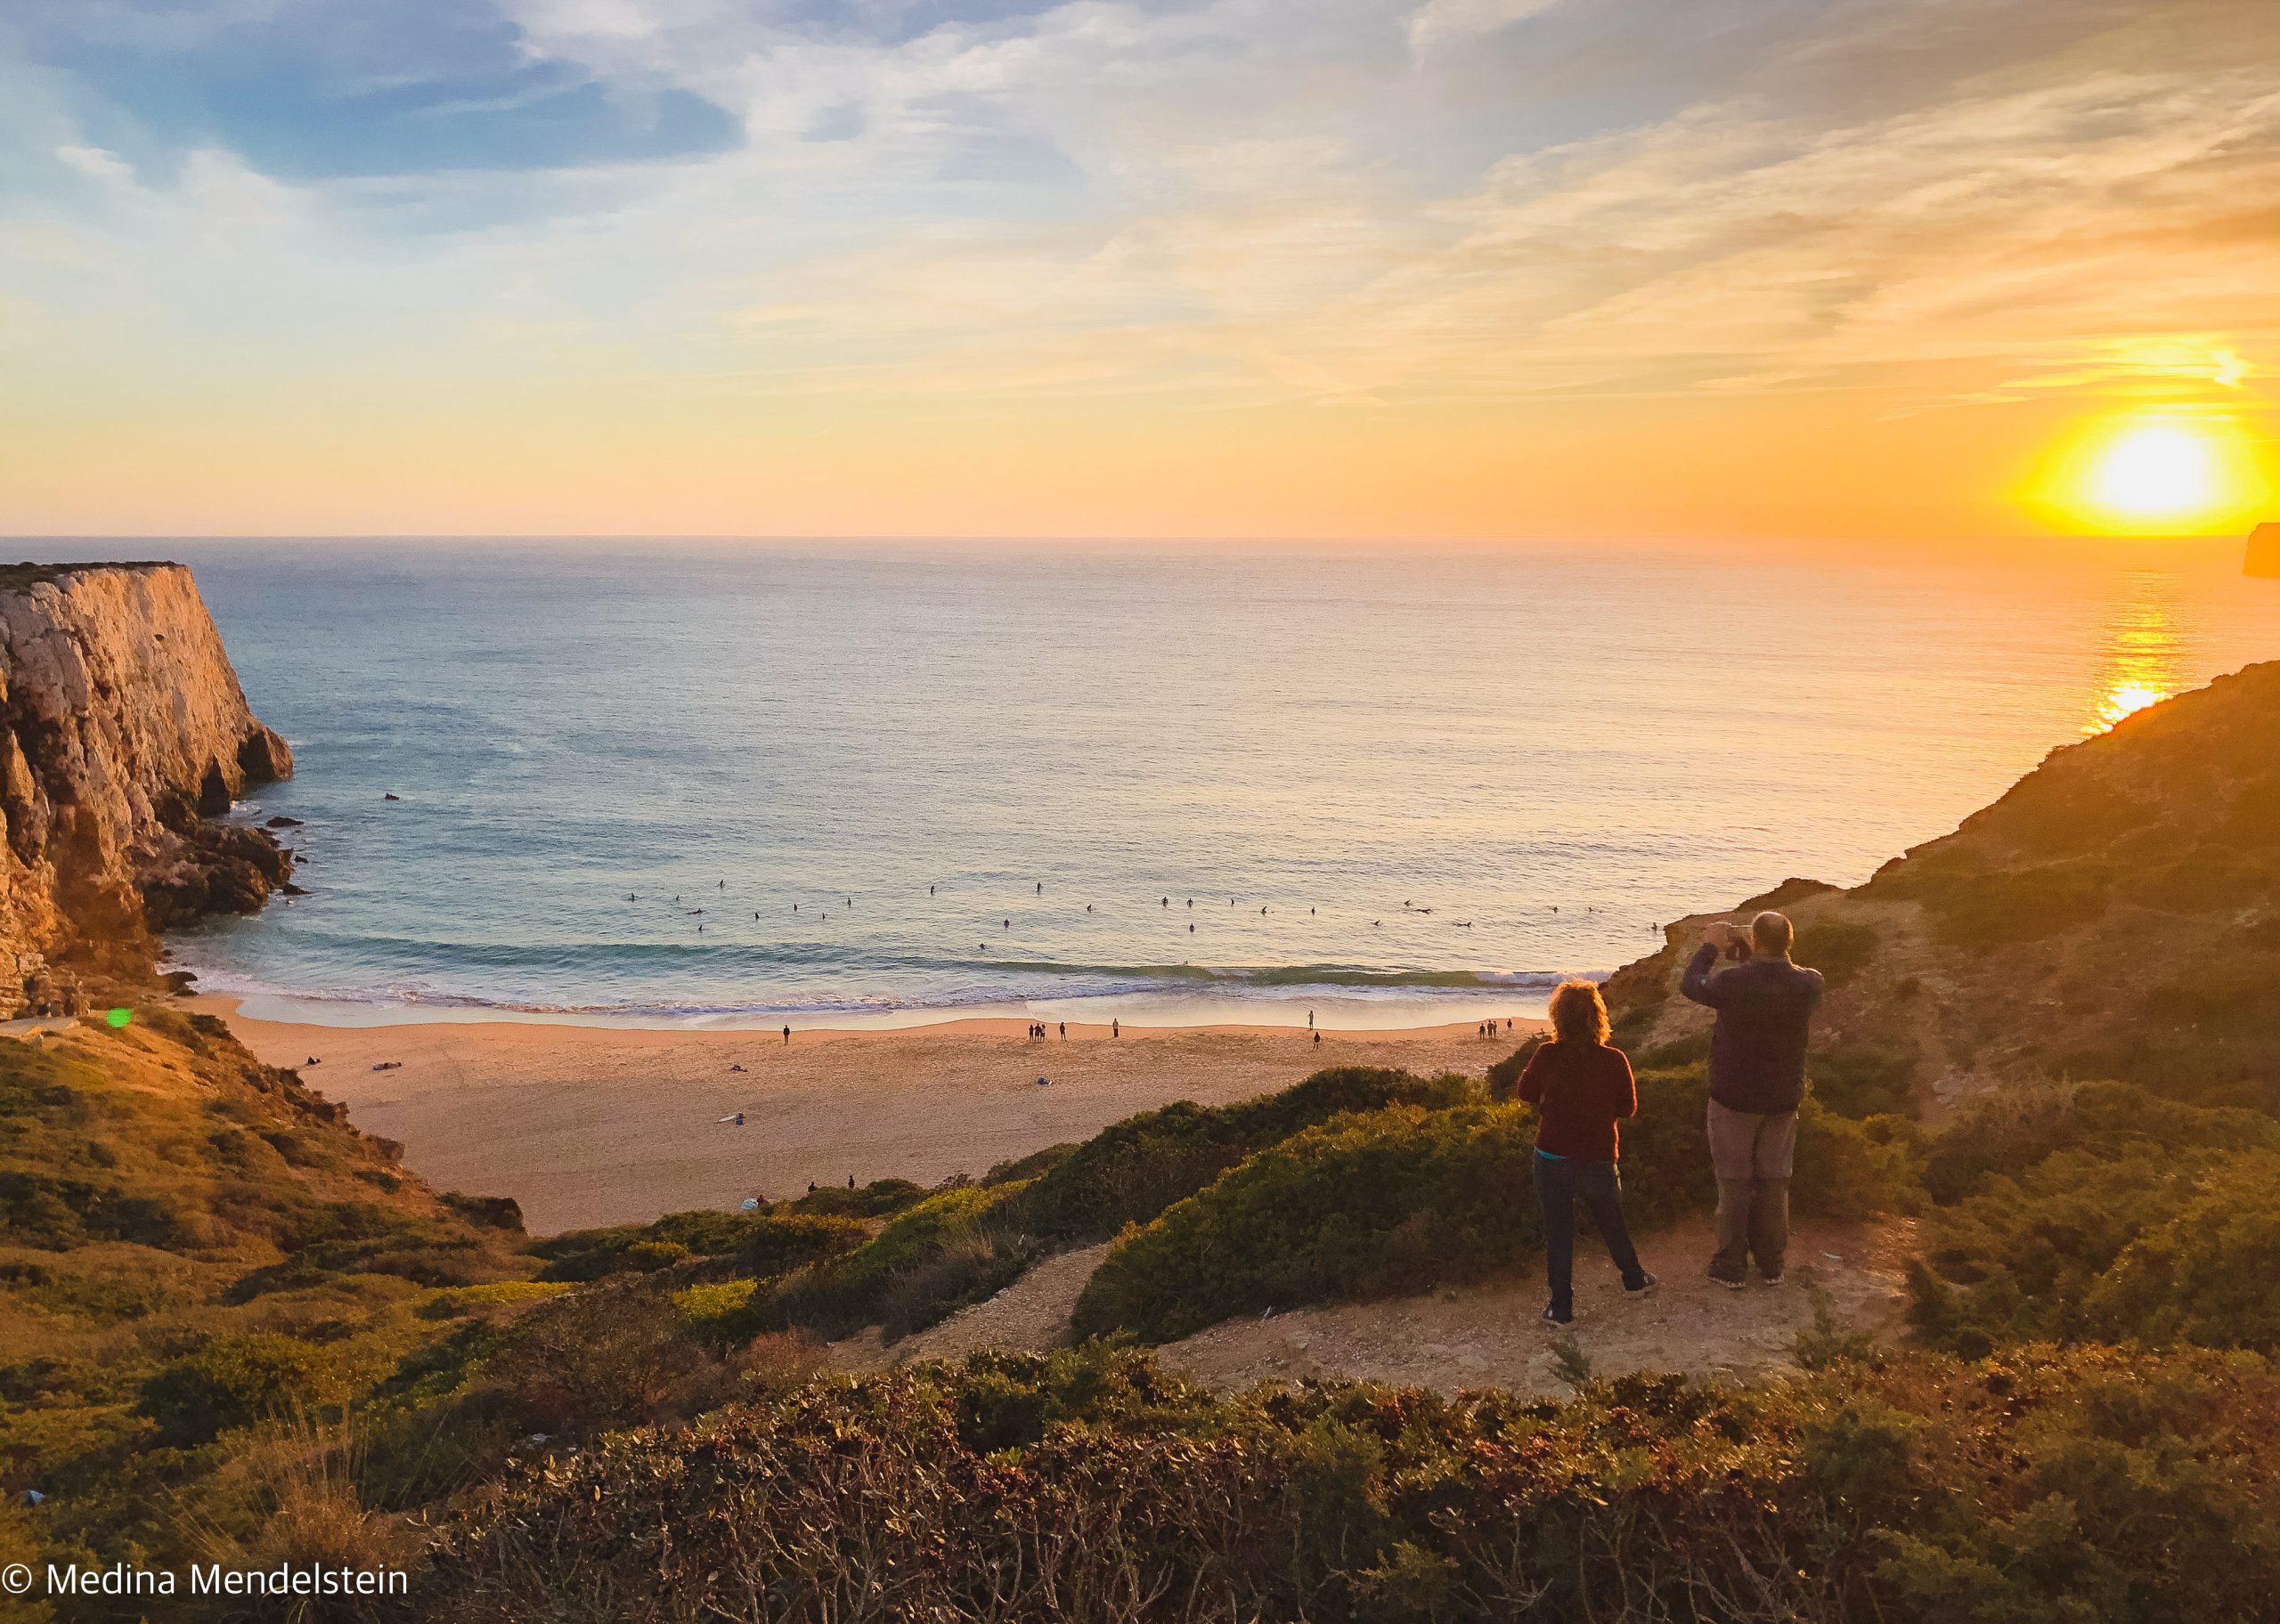 Fotografie aus: Sagres in Portugal, Europa: Strand bei Sonnenuntergang von einer Steilküste aus fotografiert. Im Wasser sind viele Surfer. Auf einem Vorsprung stehen zwei Menschen und schauen zum Wasser.